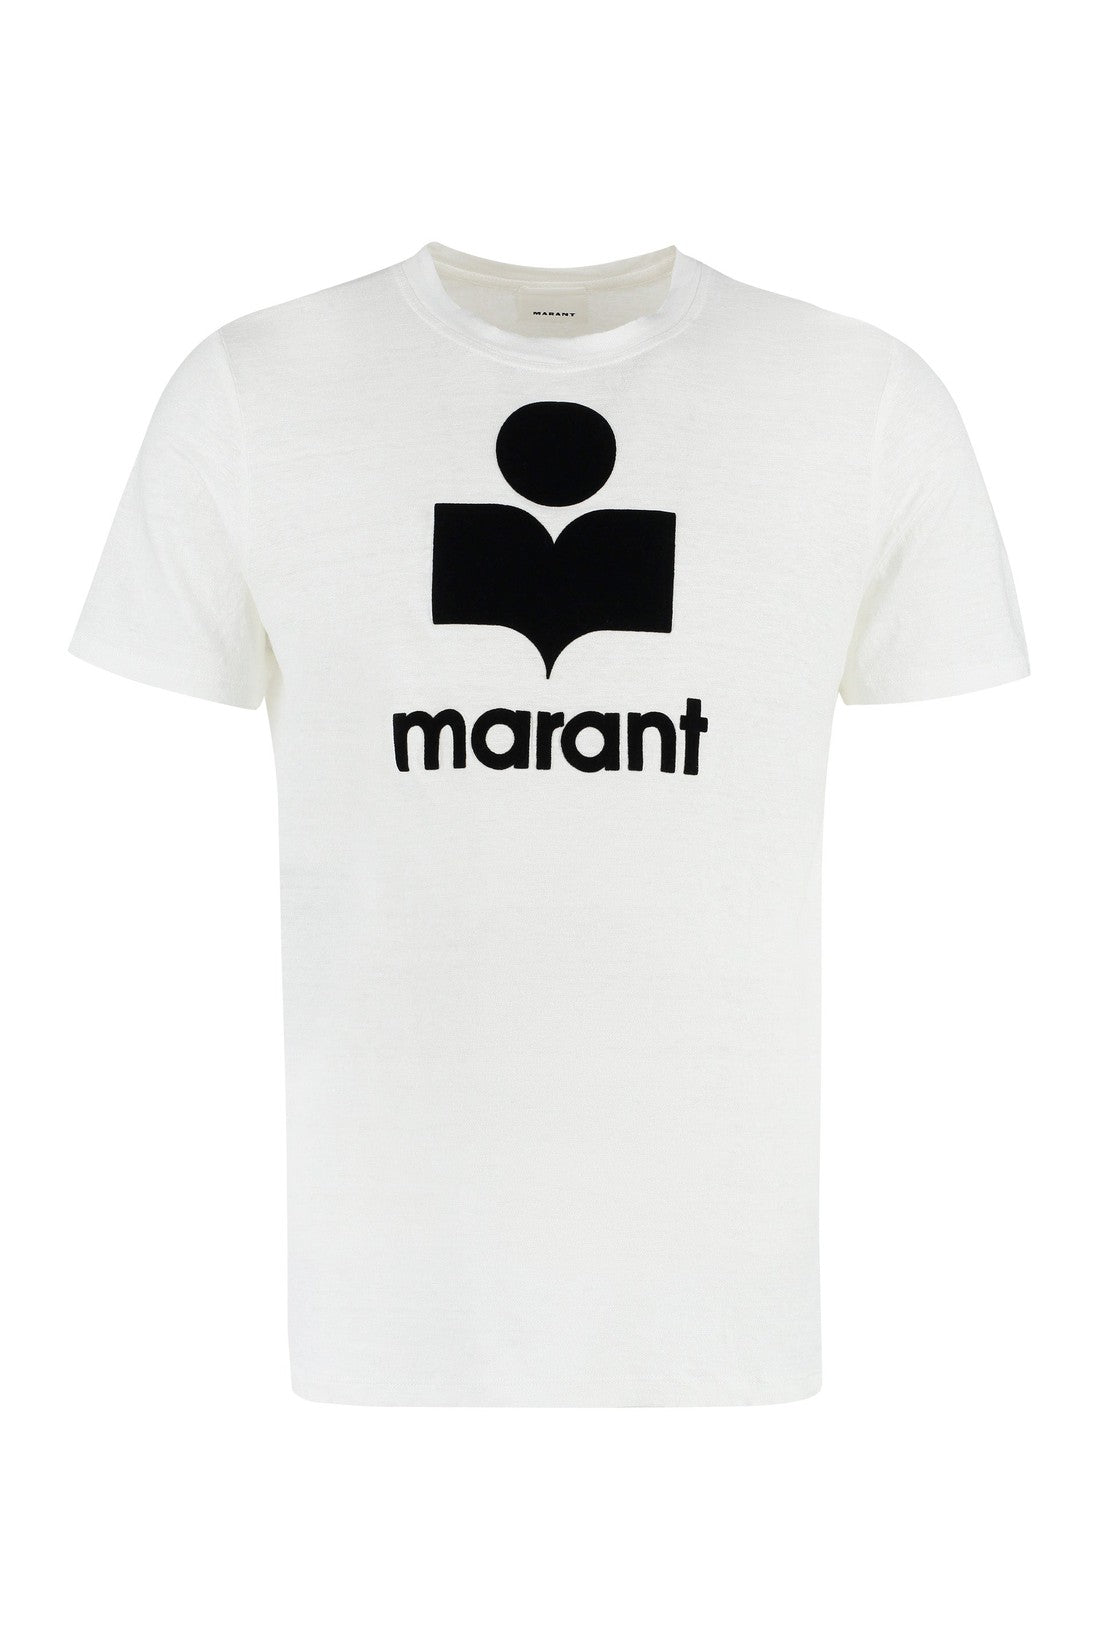 Isabel Marant-OUTLET-SALE-Crew-neck T-shirt-ARCHIVIST